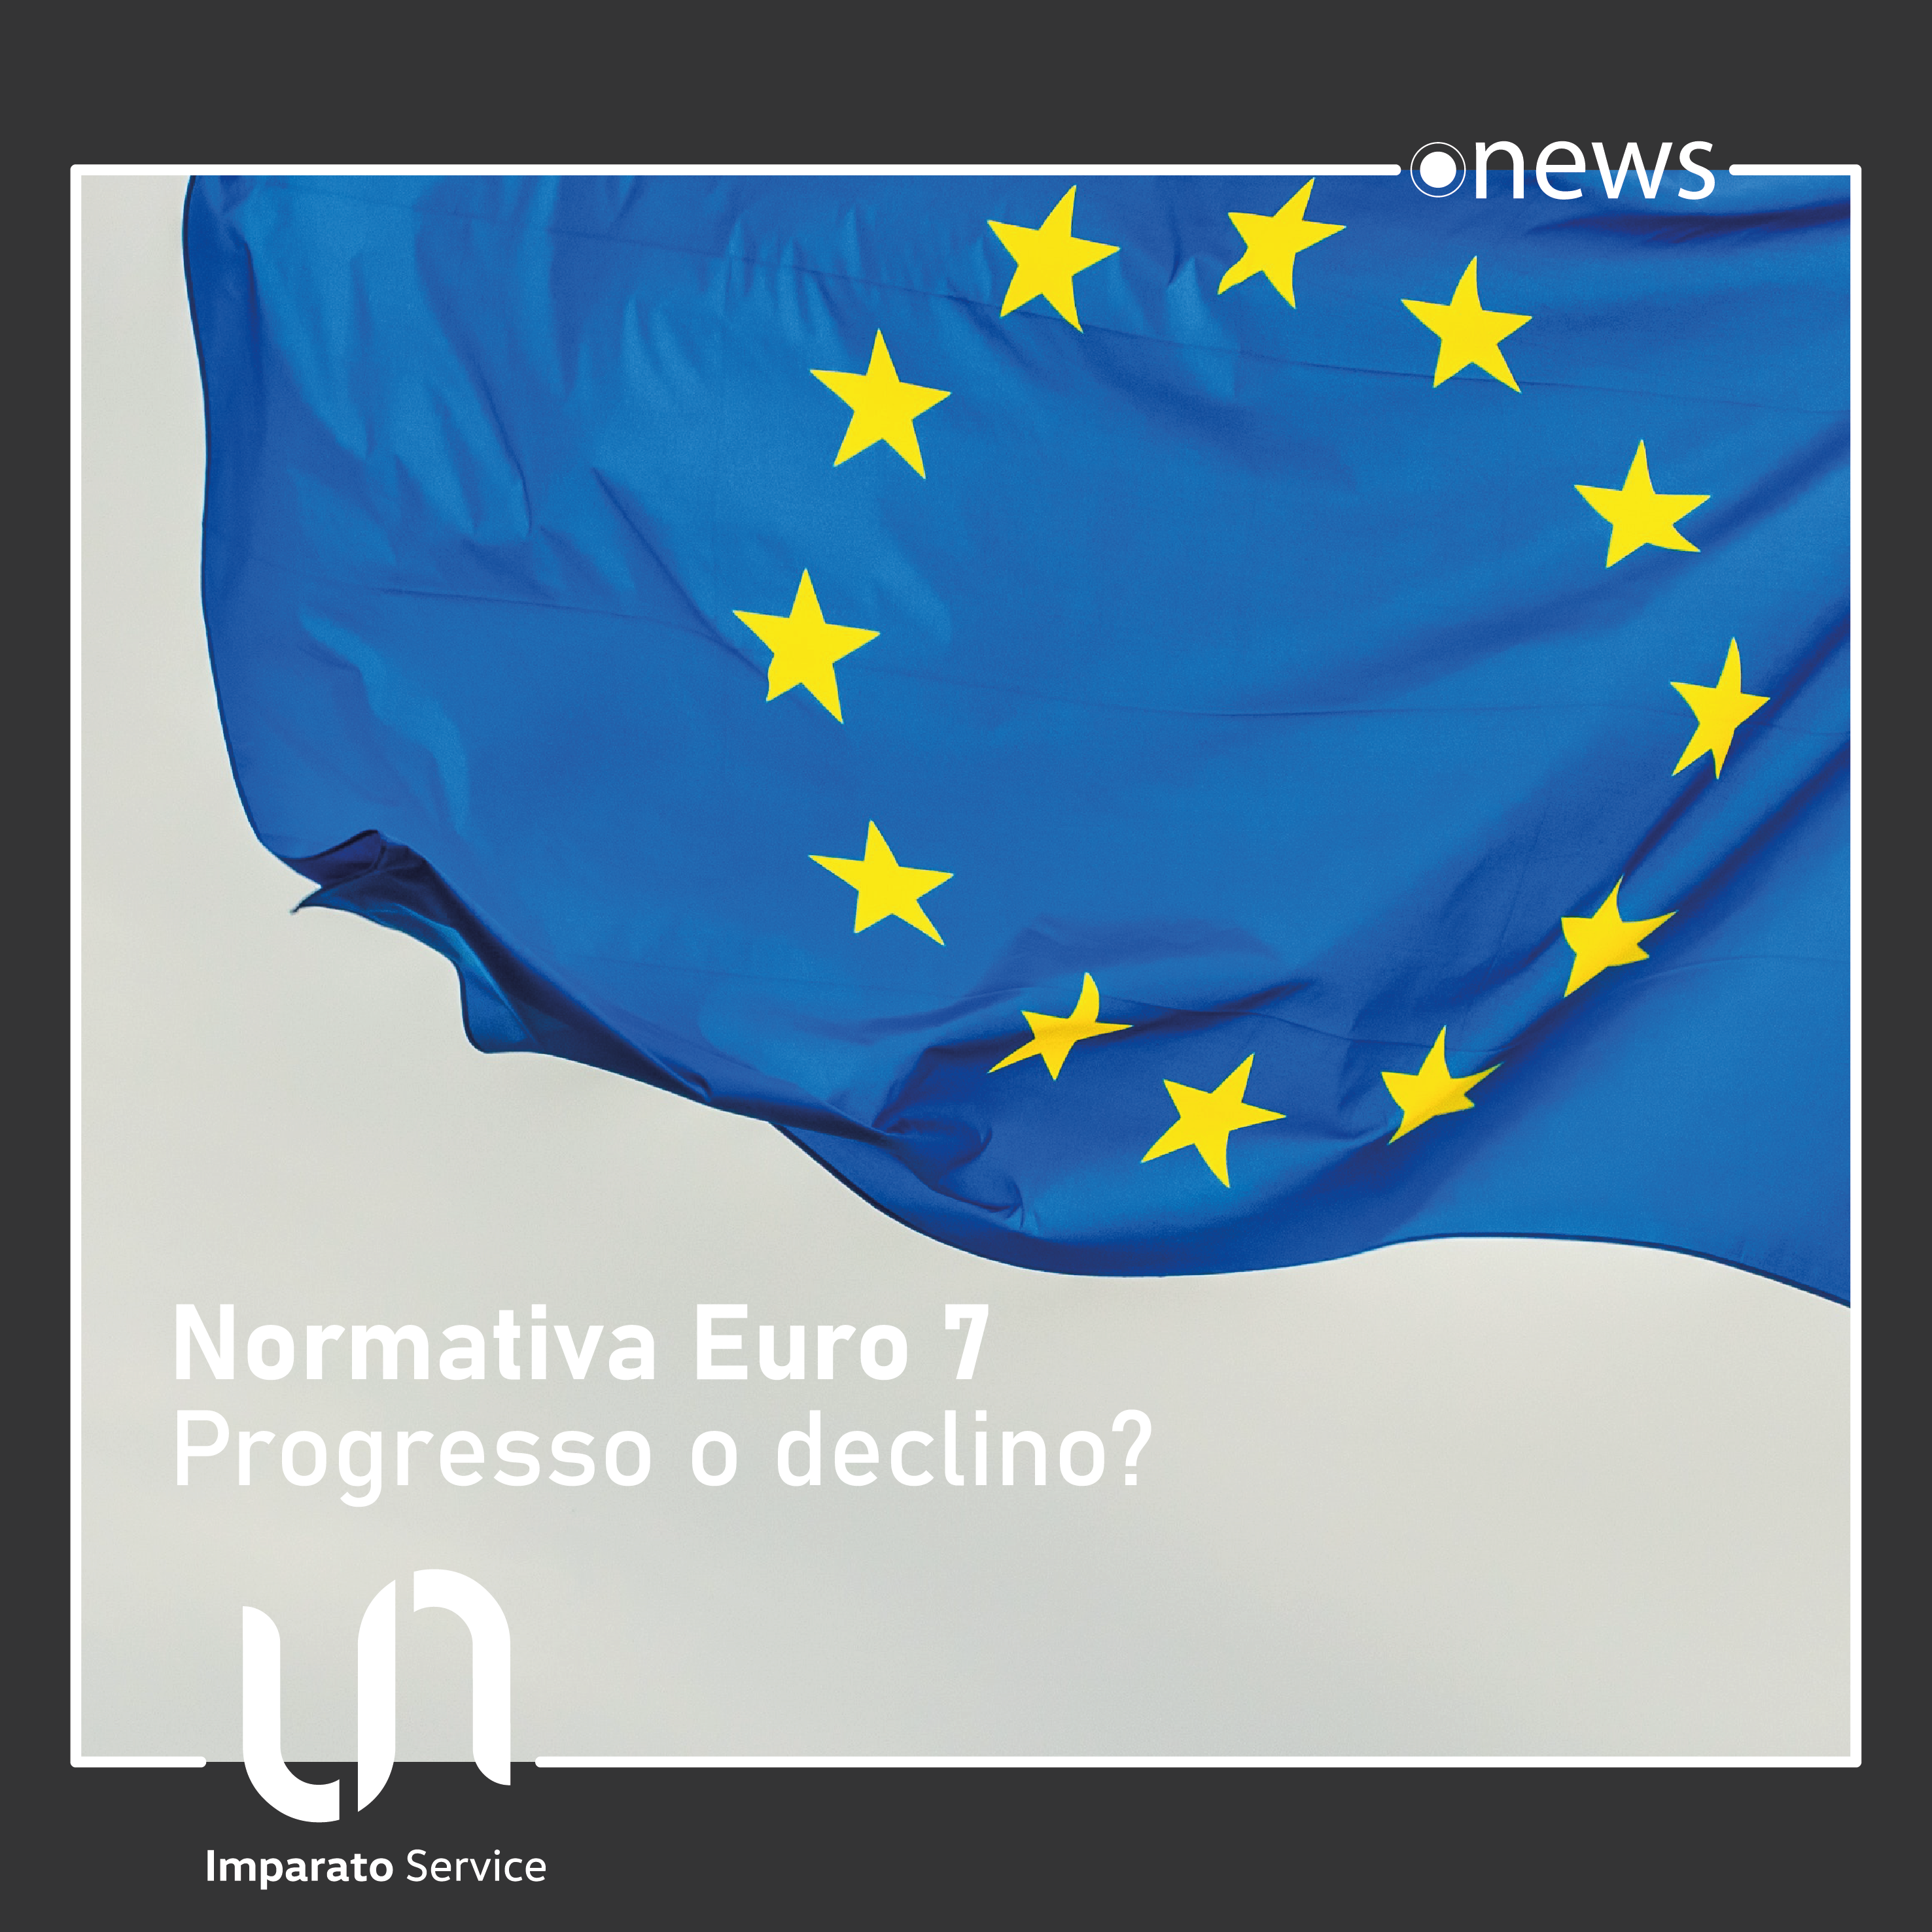 Normativa Euro 7 – Progresso o declino?